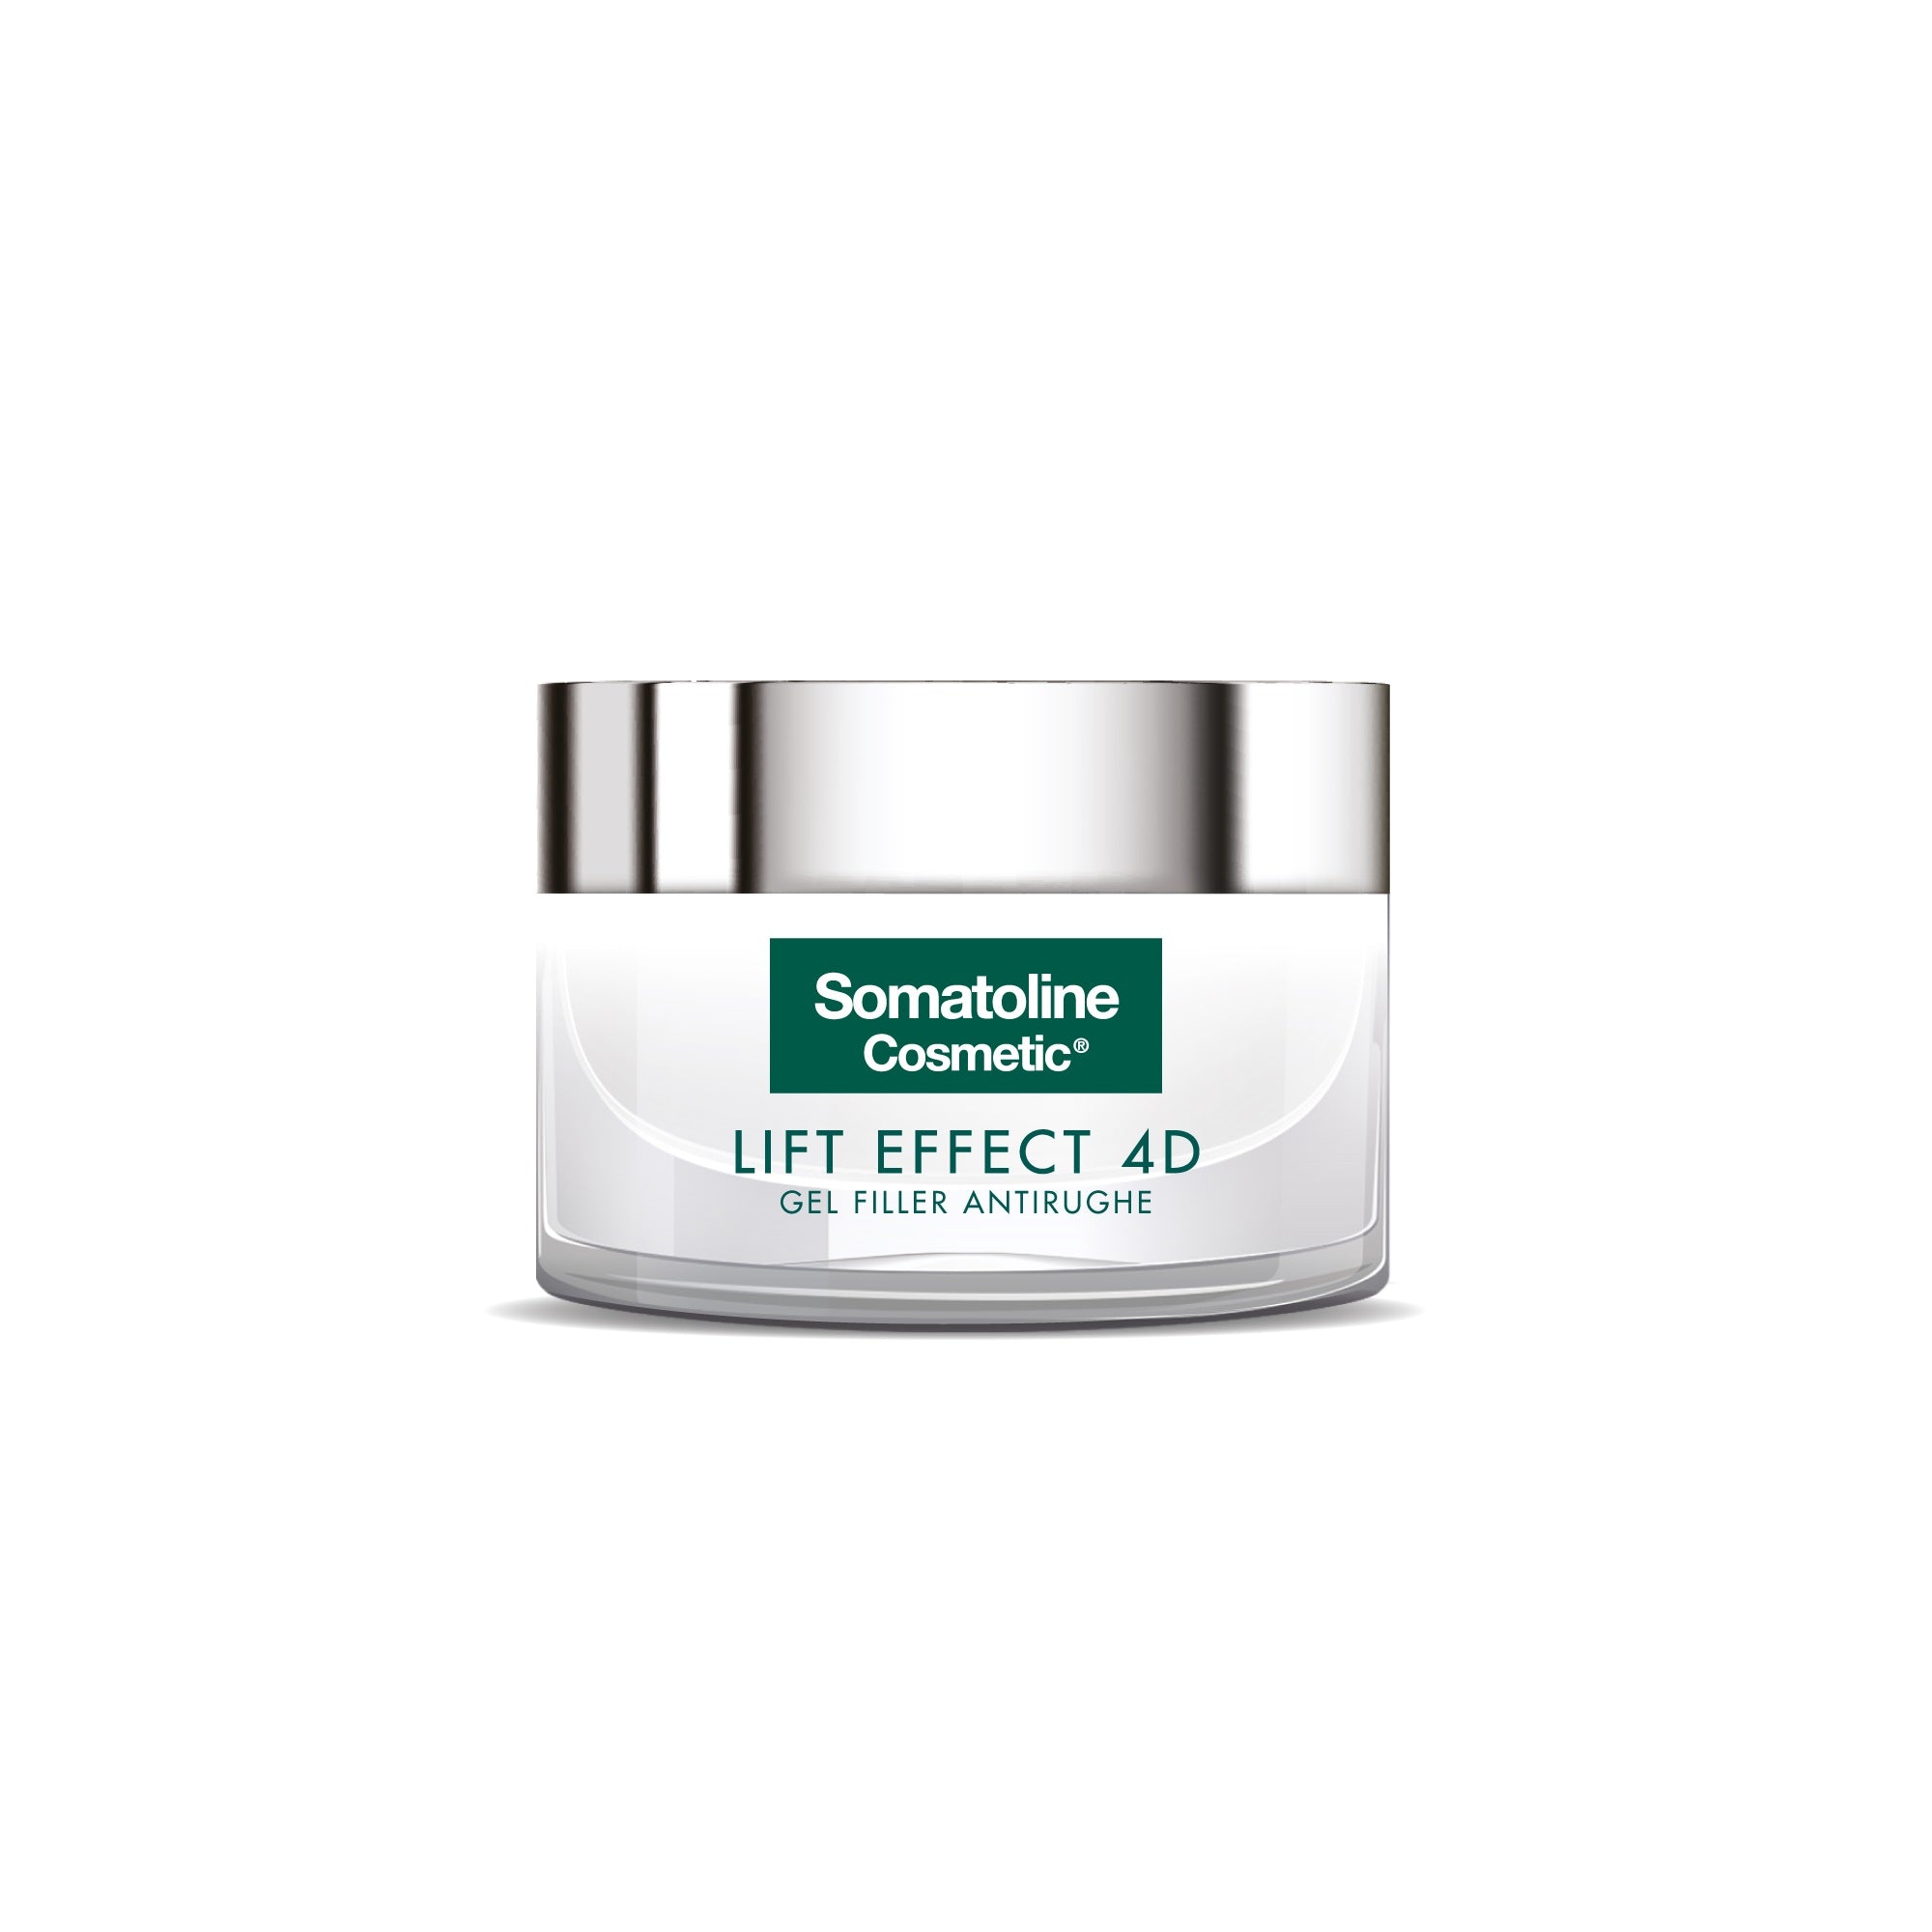 Somatoline Cosmetic Lift Effect 4d Gel Filler Antirughe 50ml